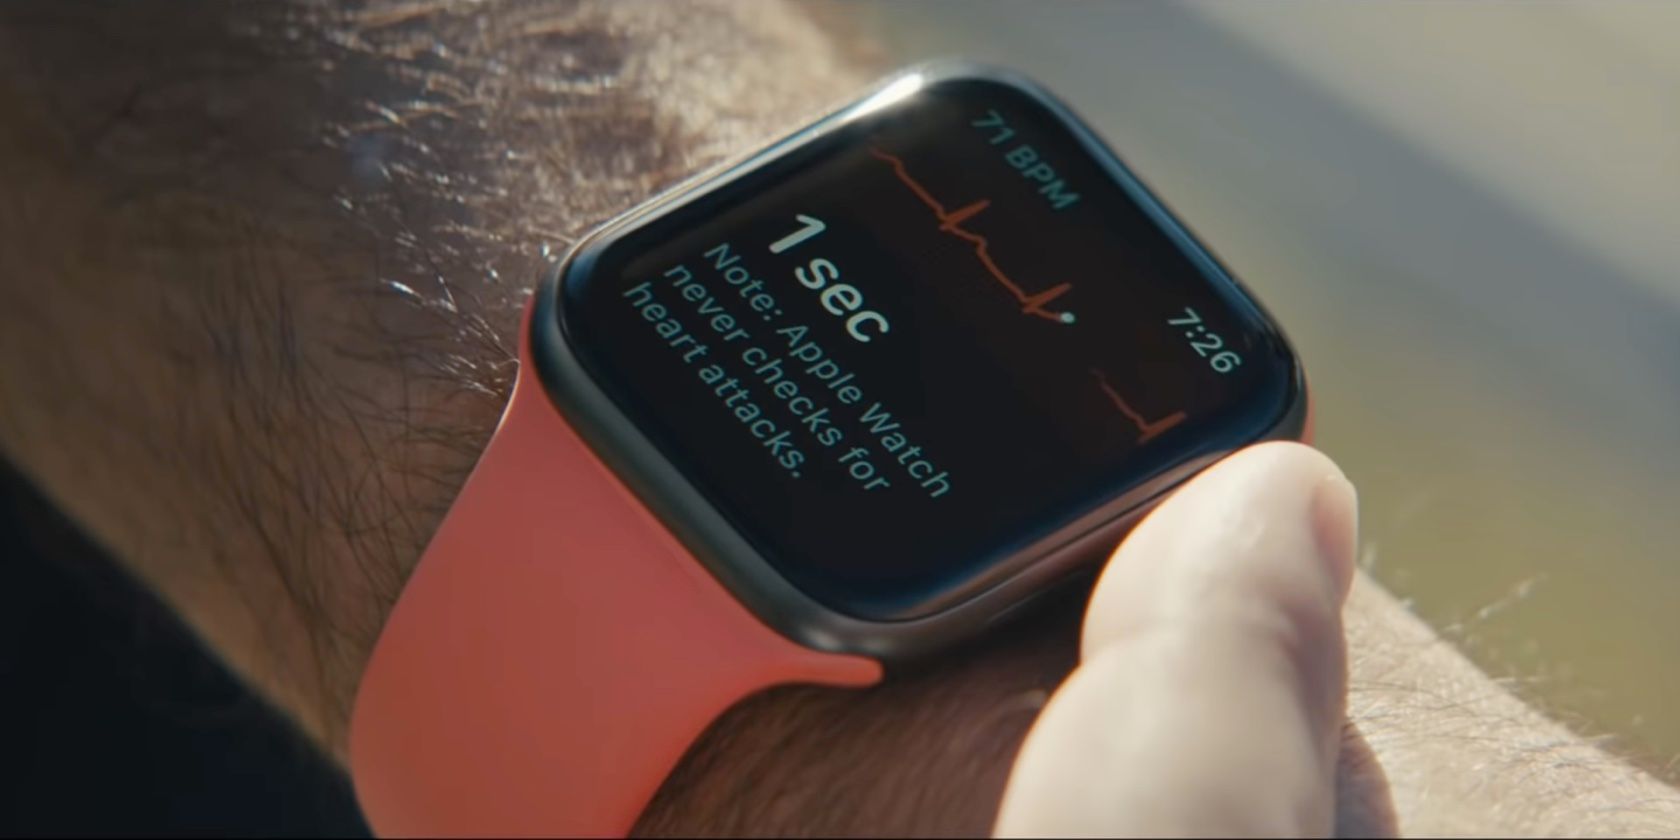 Apple Watch Series 6 ECG heart rate